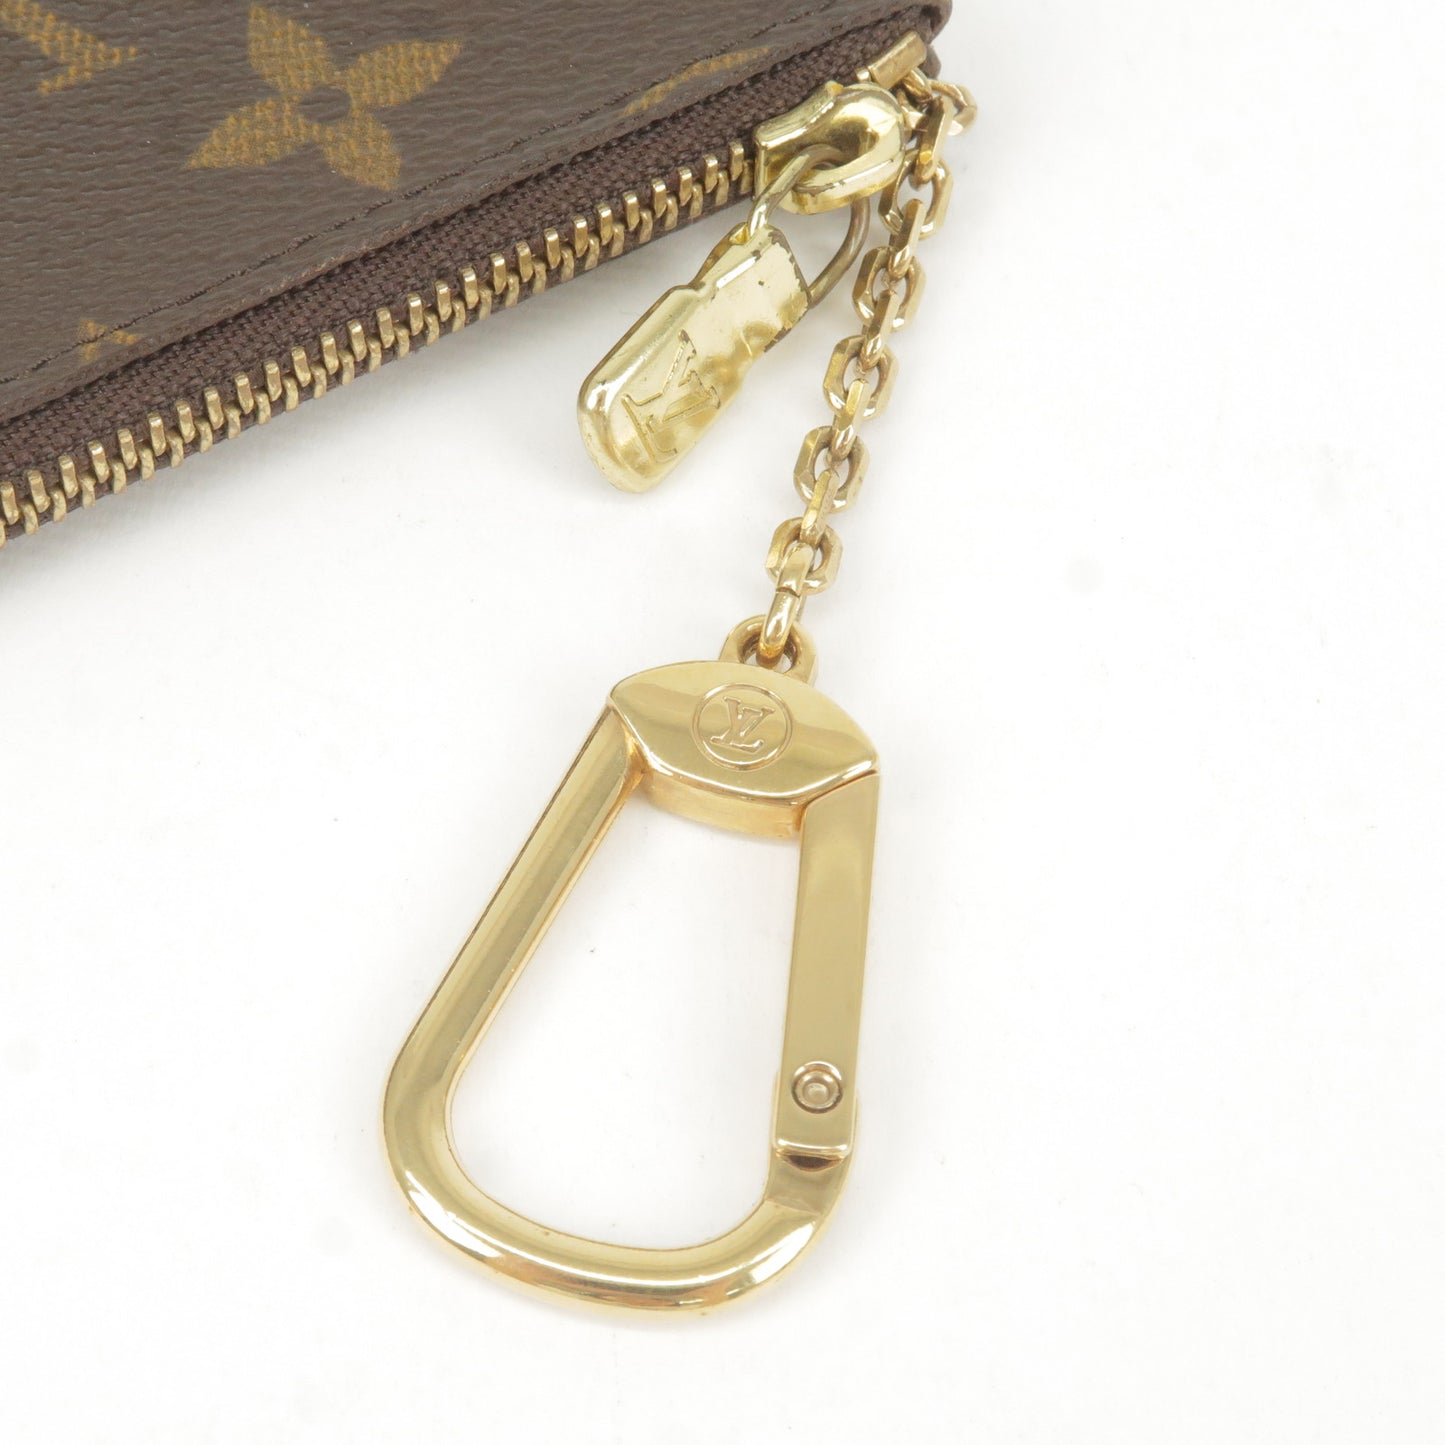 Louis Vuitton Monogram Pochette Cles Coin Case M62650